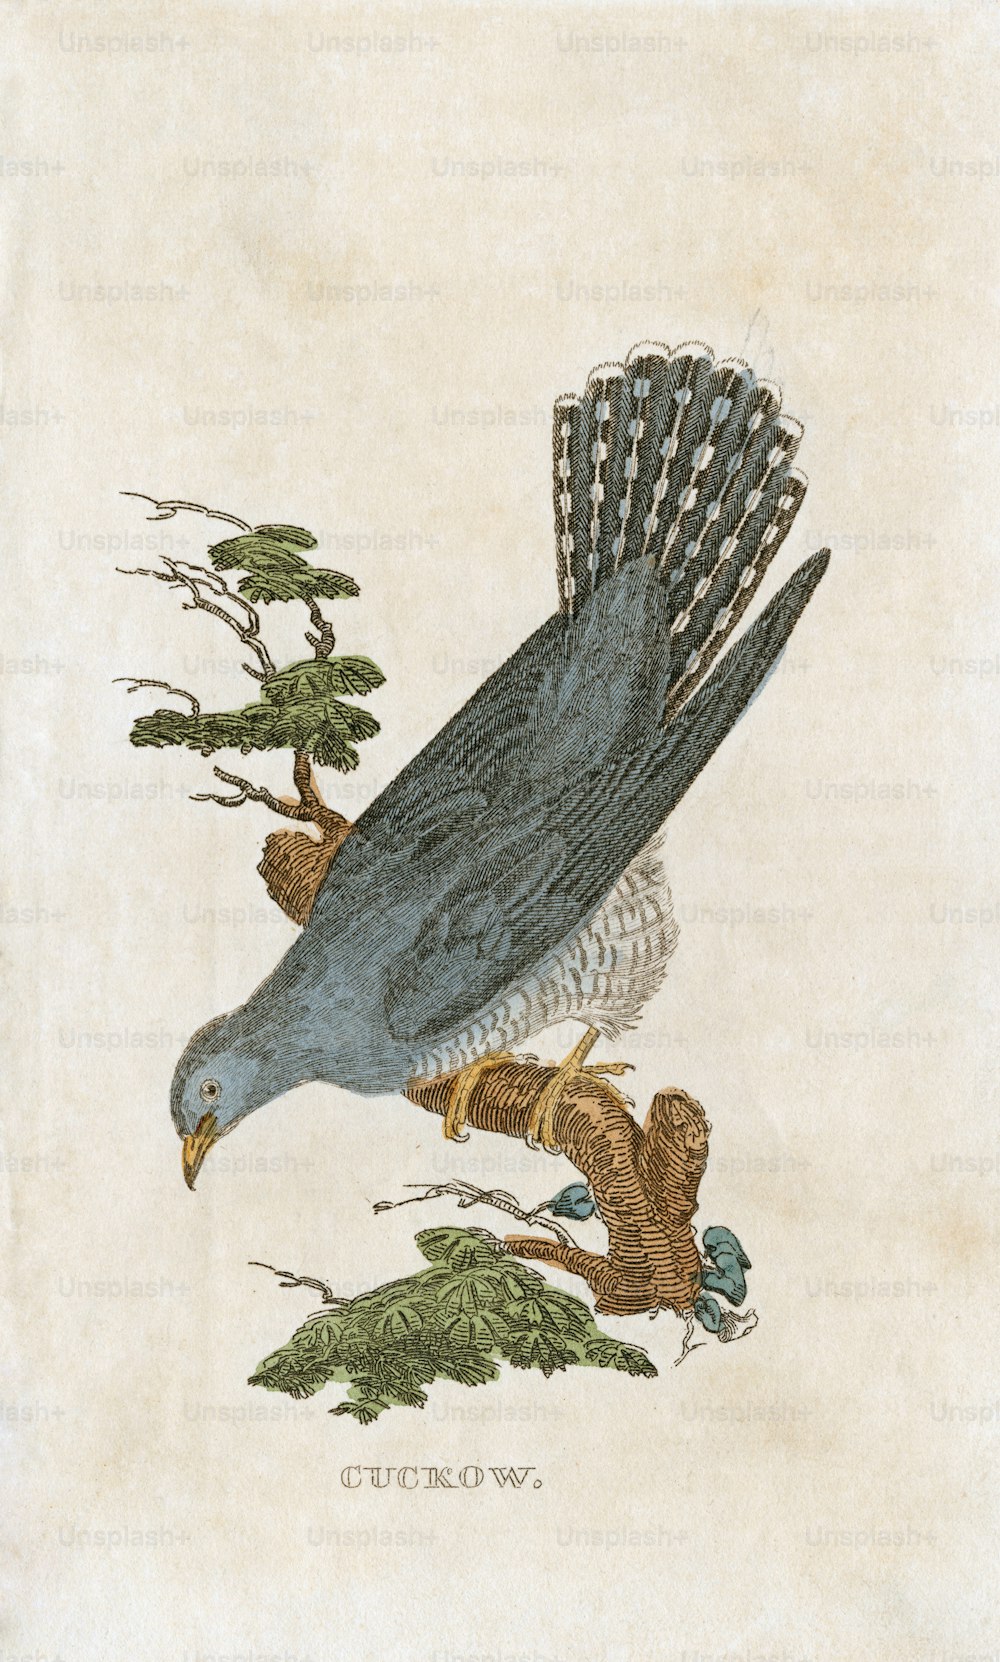 Une illustration sur plaque d’un « Cuckow », ou coucou, vers 1850. (Photo de Hulton Archive/Getty Images)